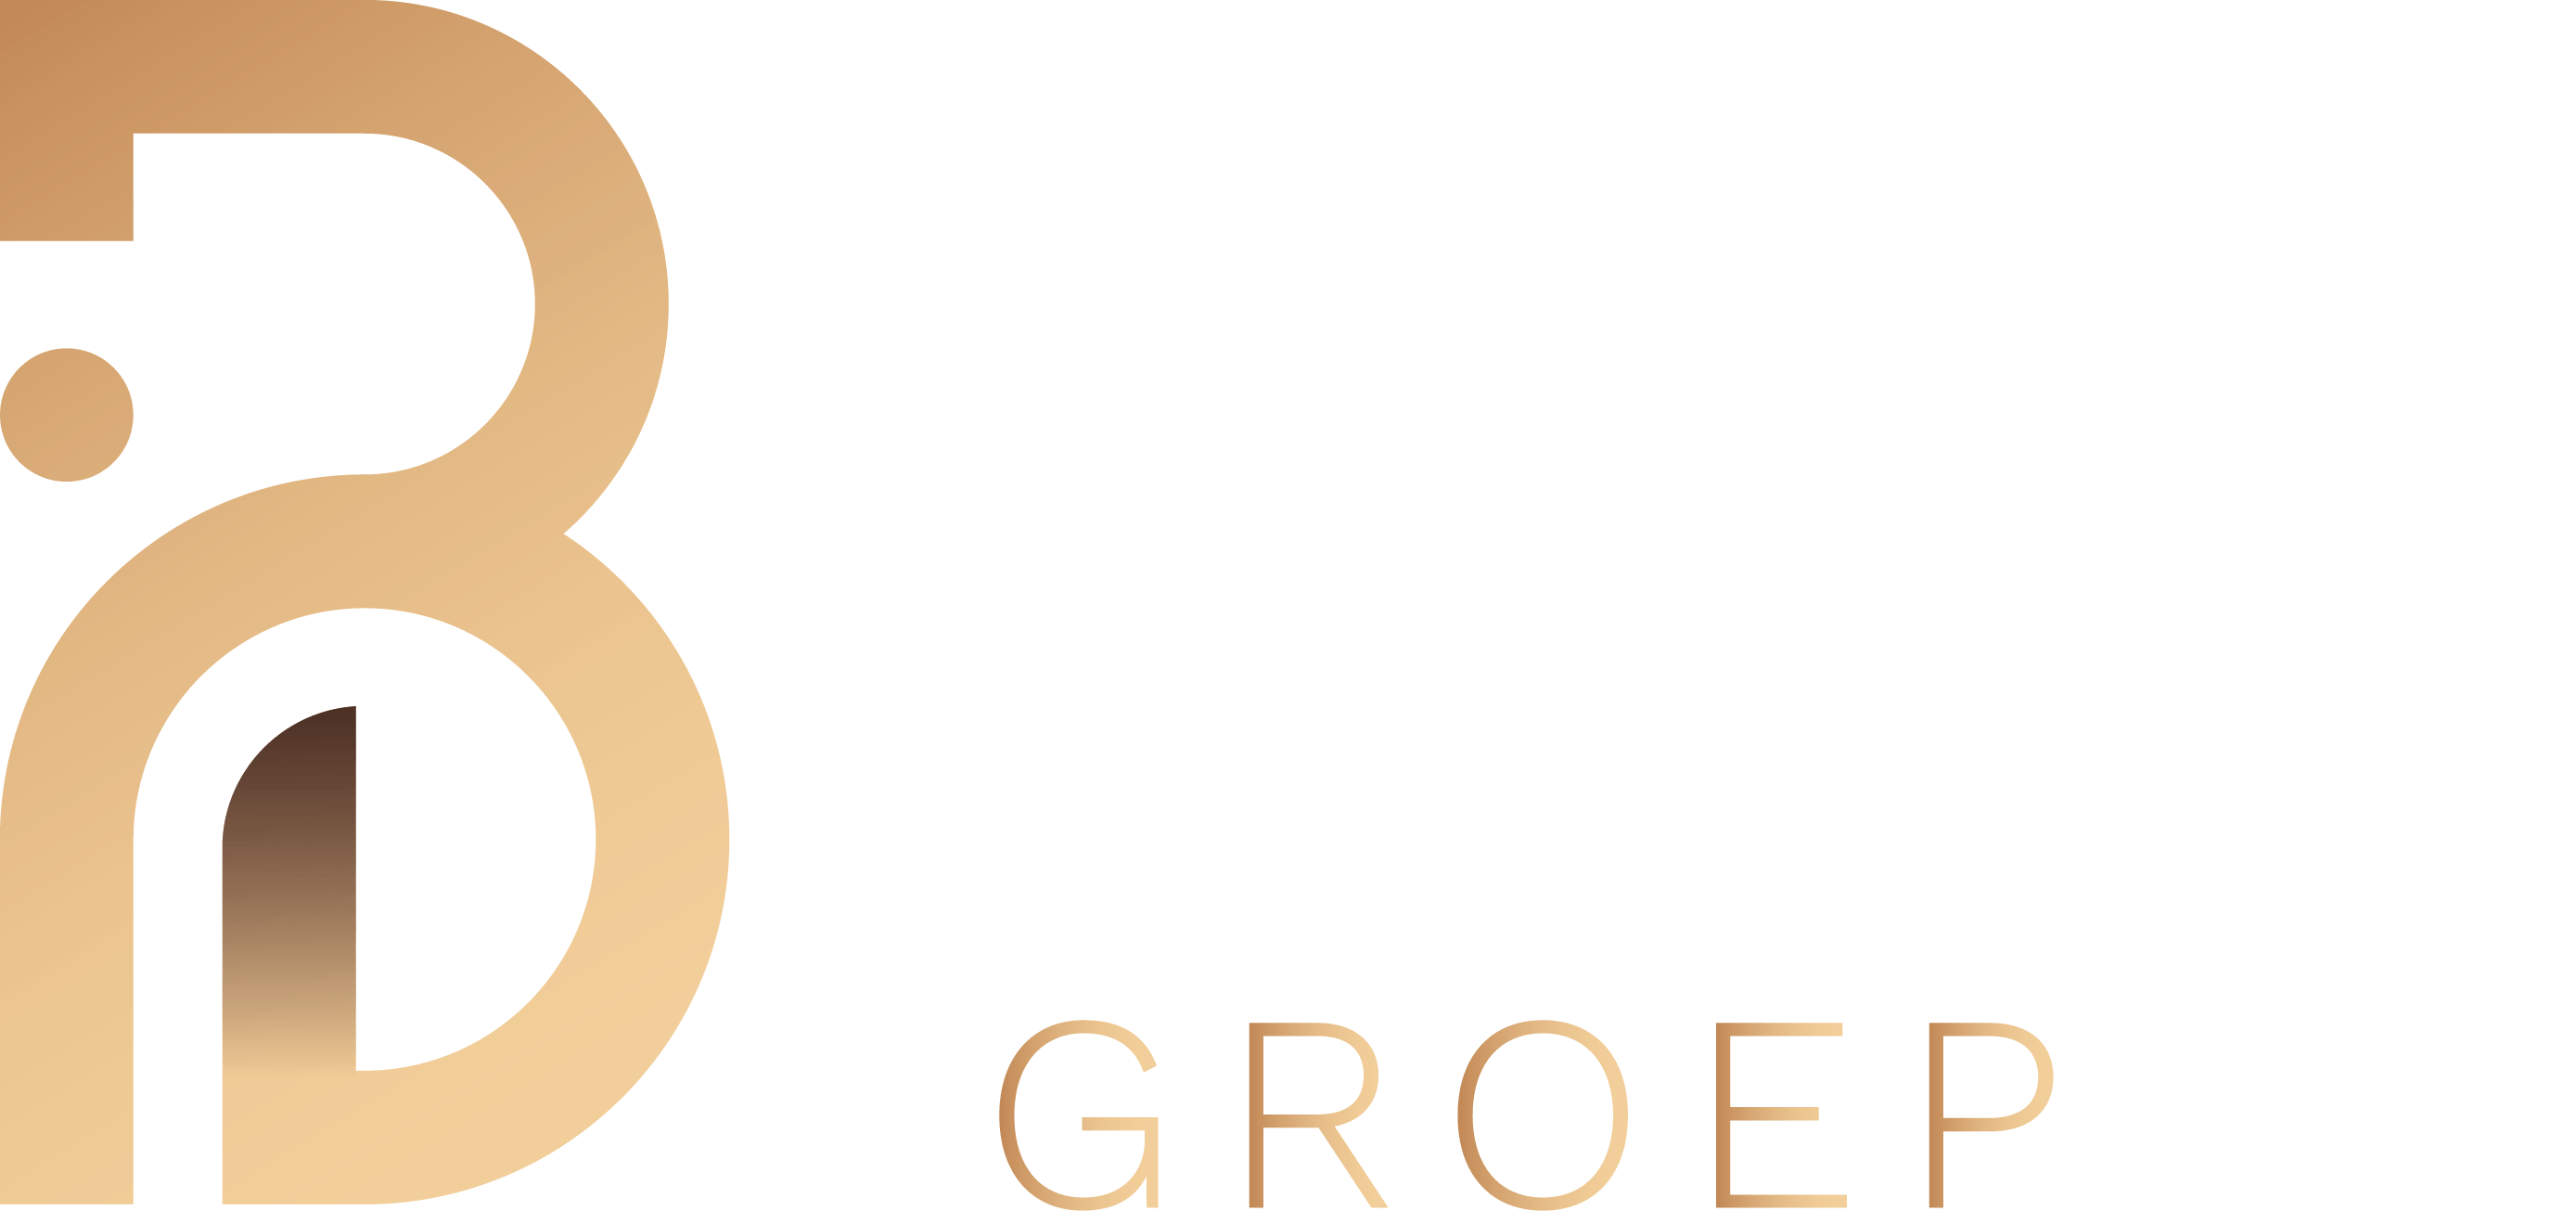 Beko Groep